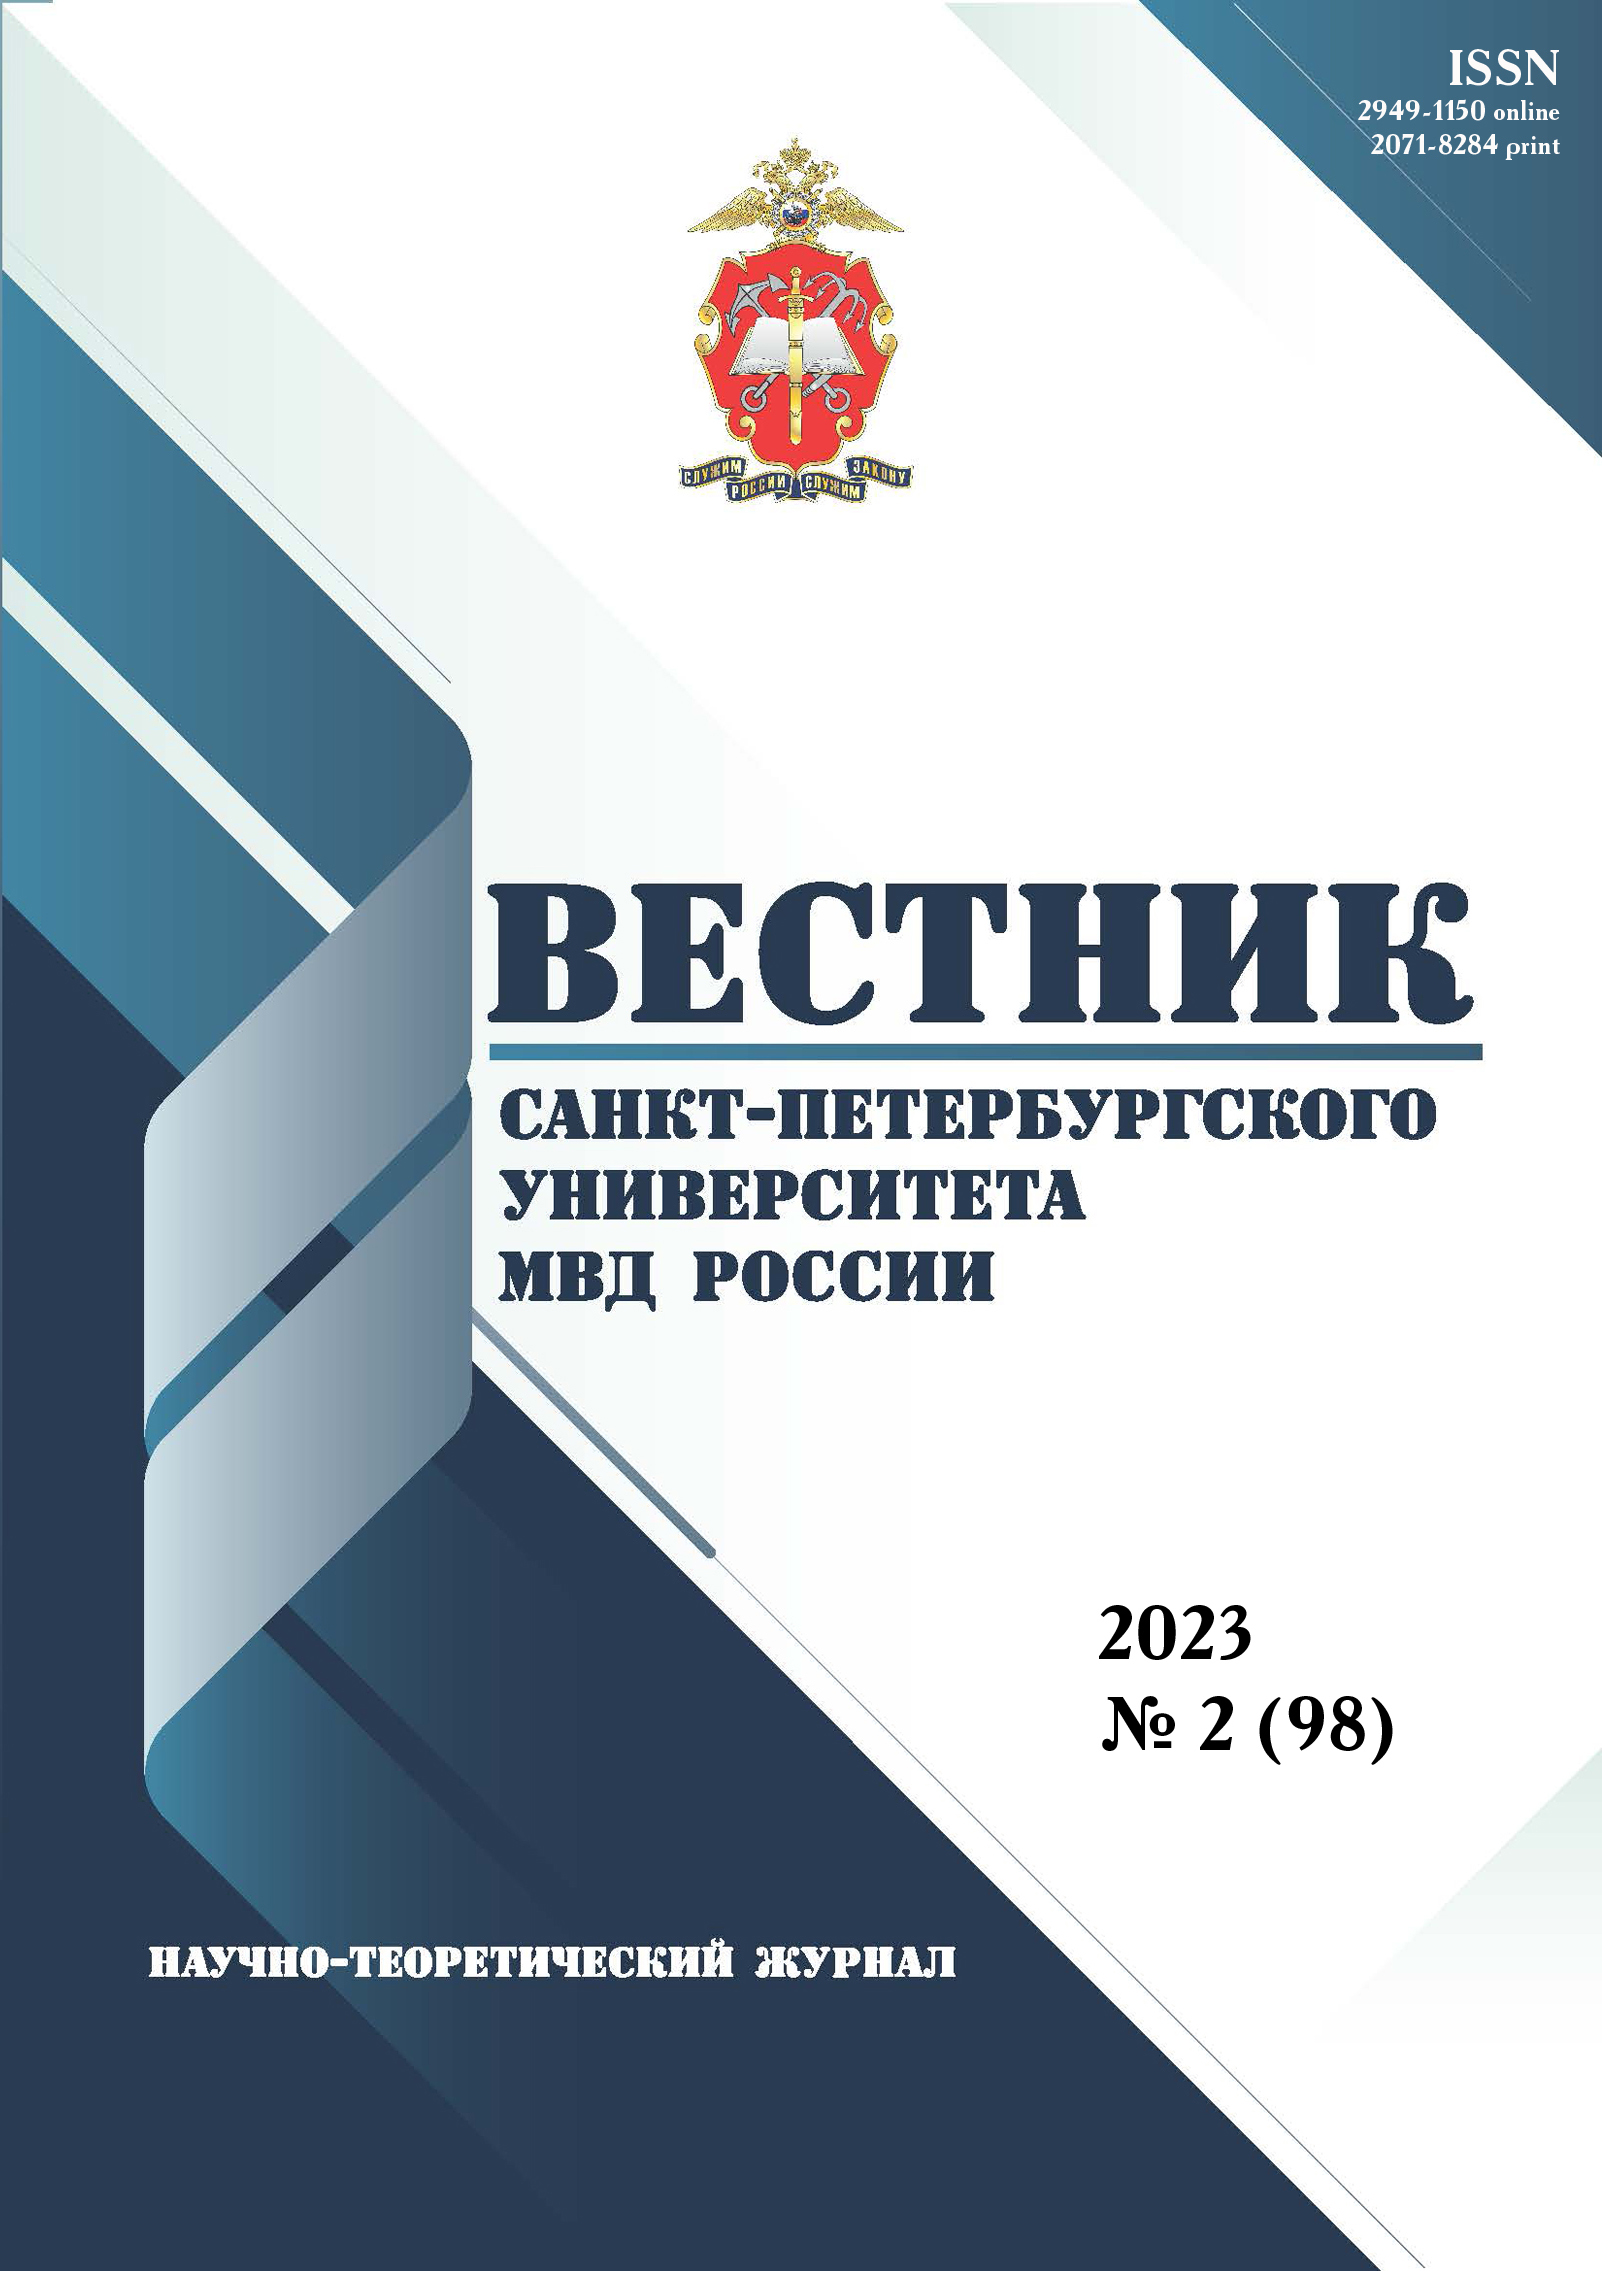             Цифровизация ведомственного контроля информационного обеспечения деятельности органов внутренних дел Российской Федерации
    